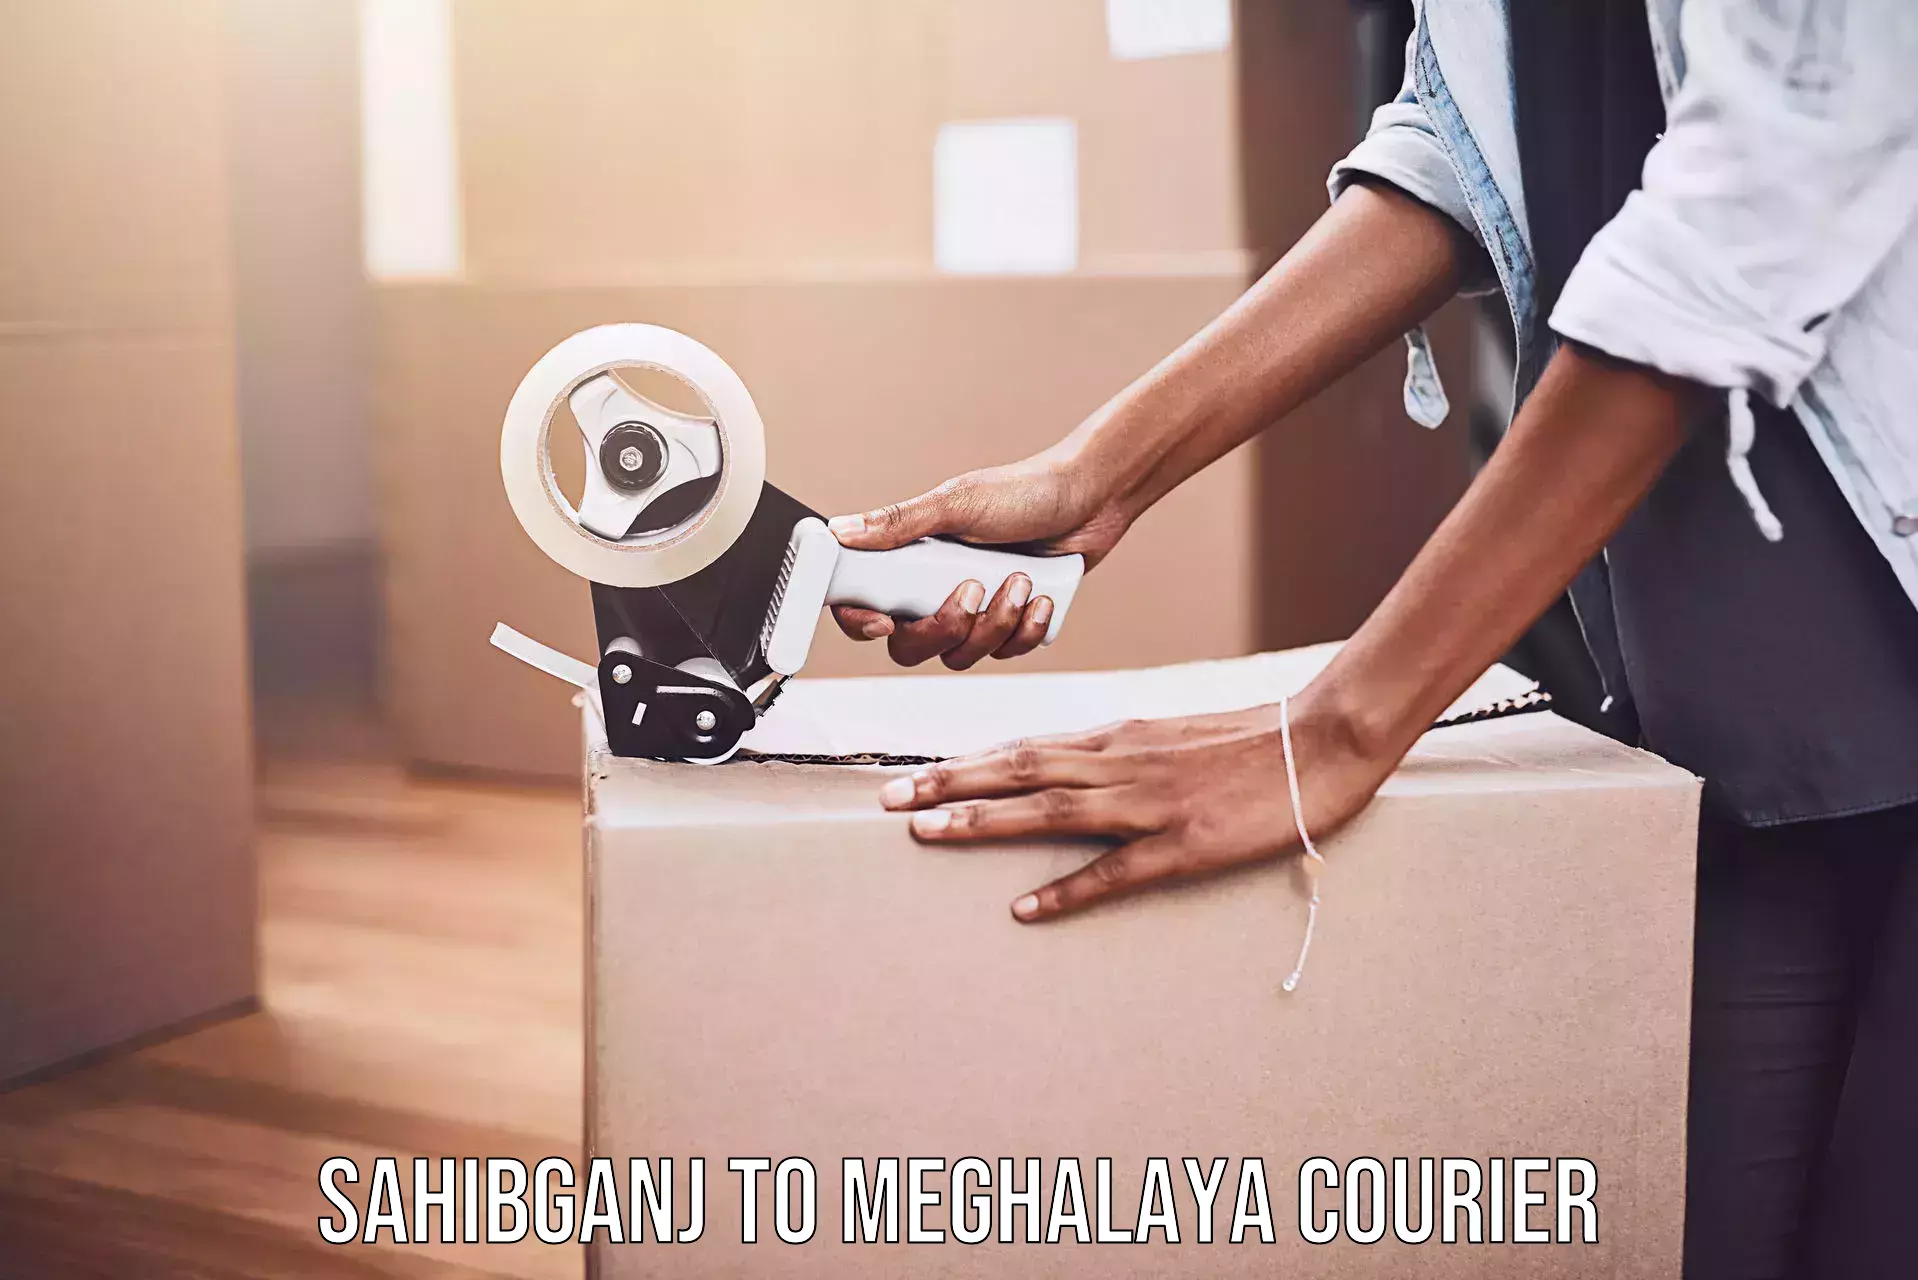 Reliable courier service Sahibganj to Shillong